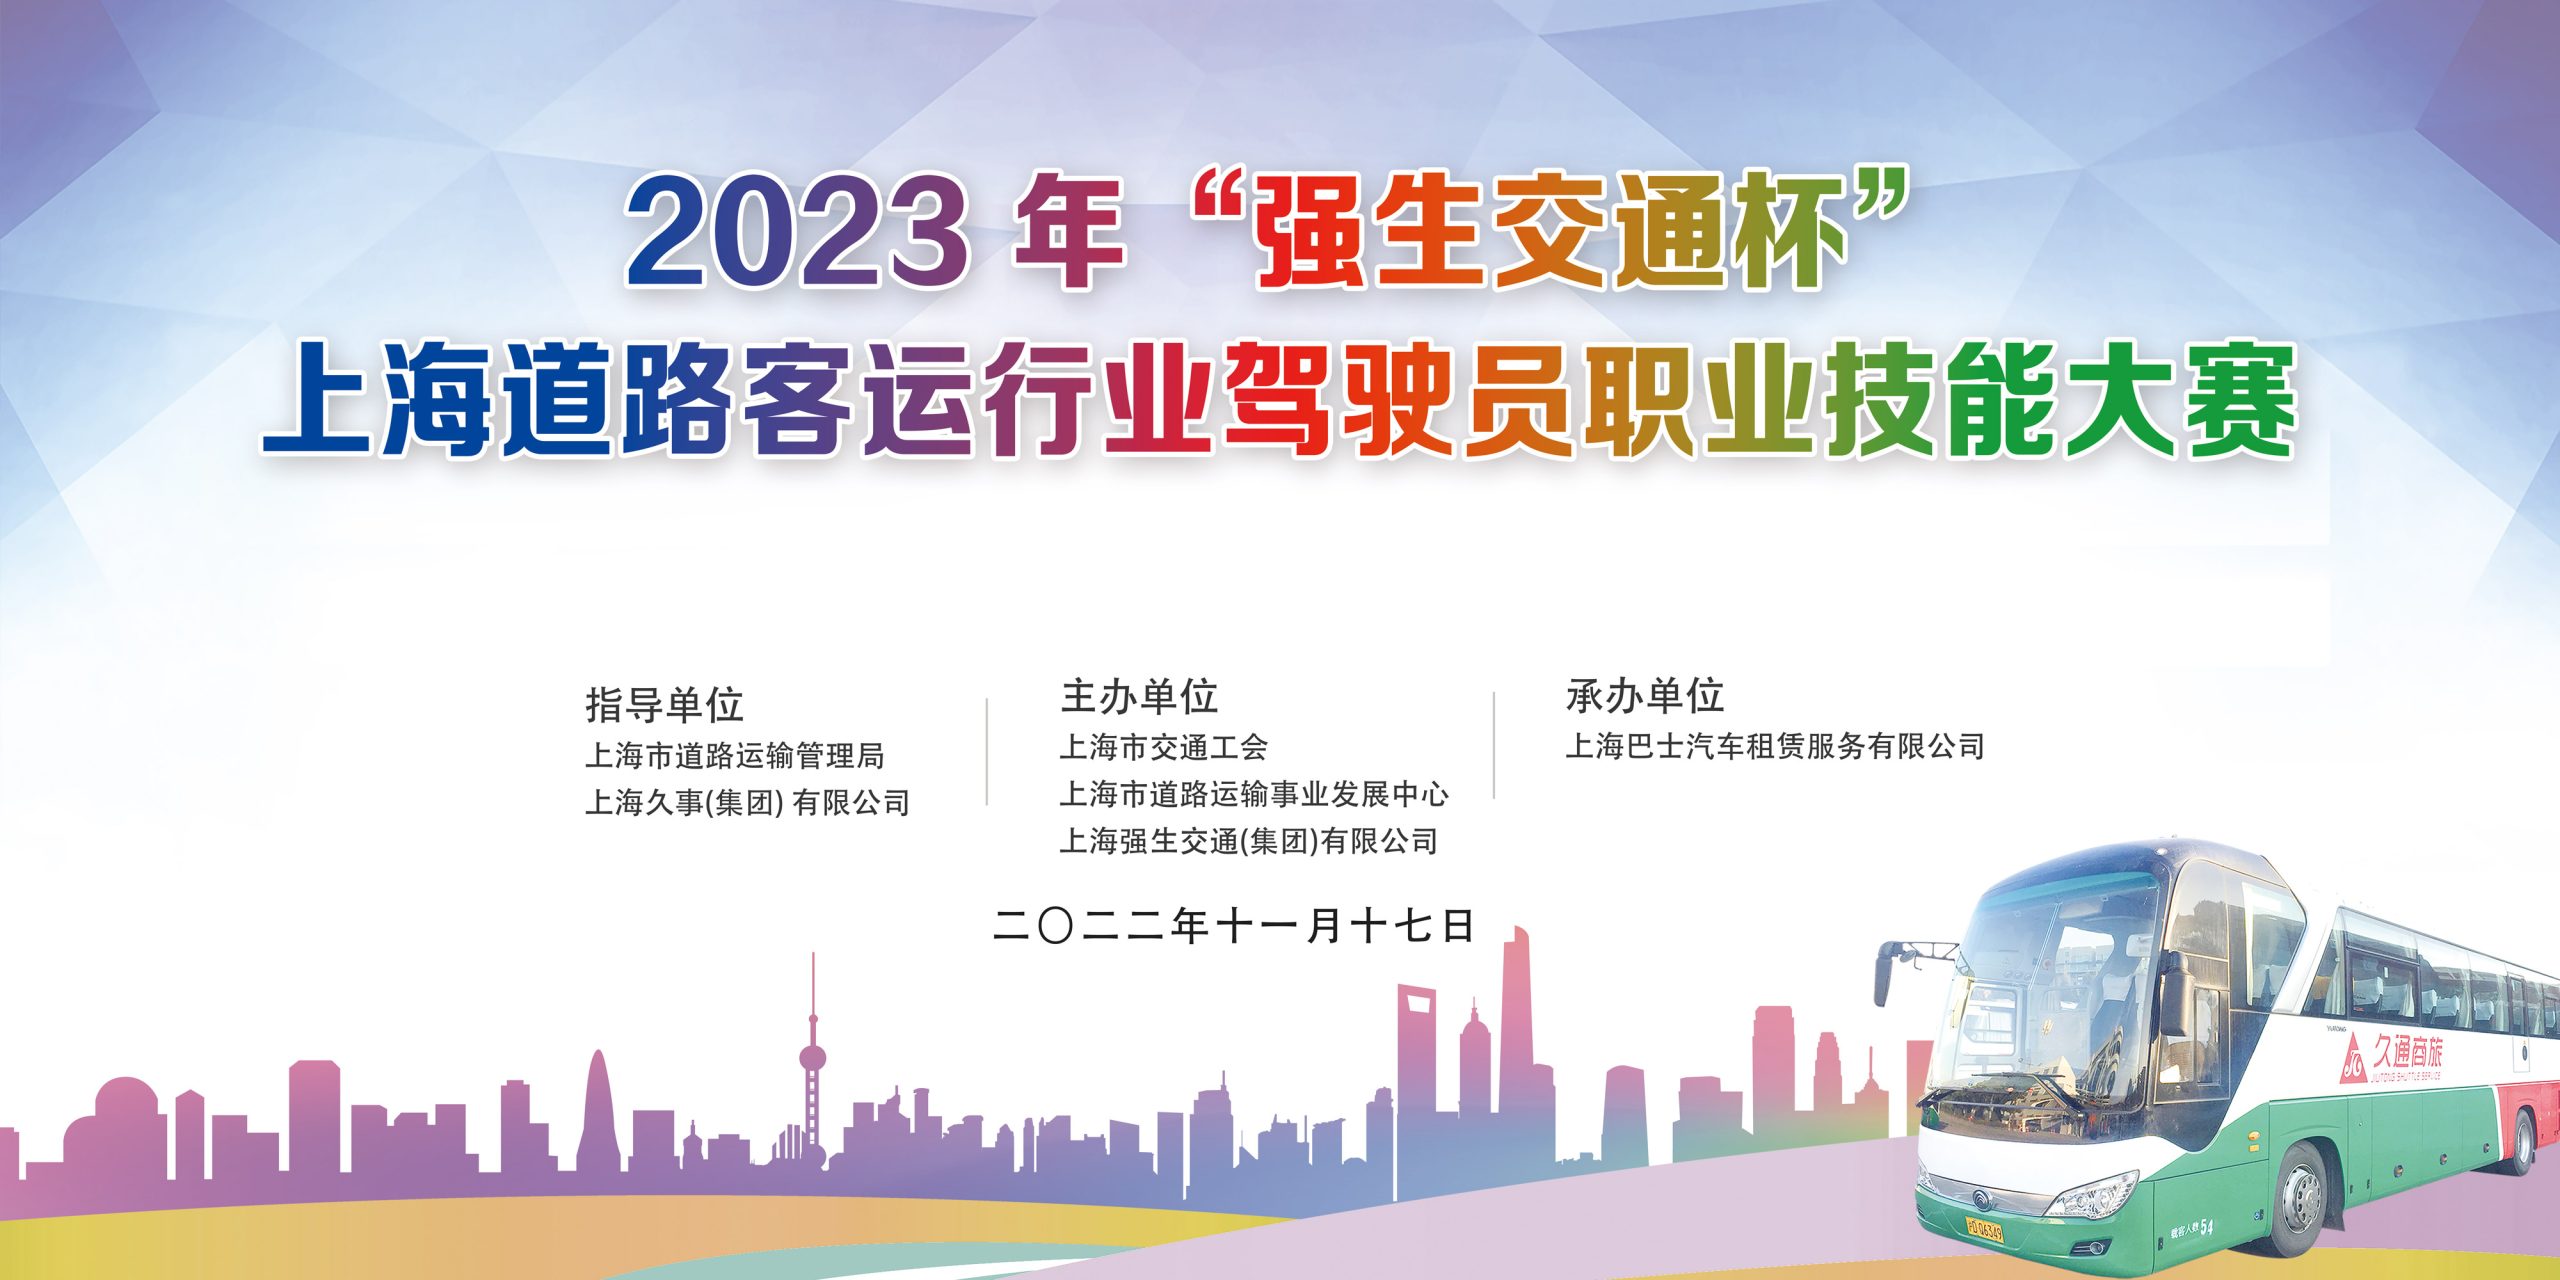 2023 年“强生交通杯”上海道路客运行业驾驶员职业技能大赛